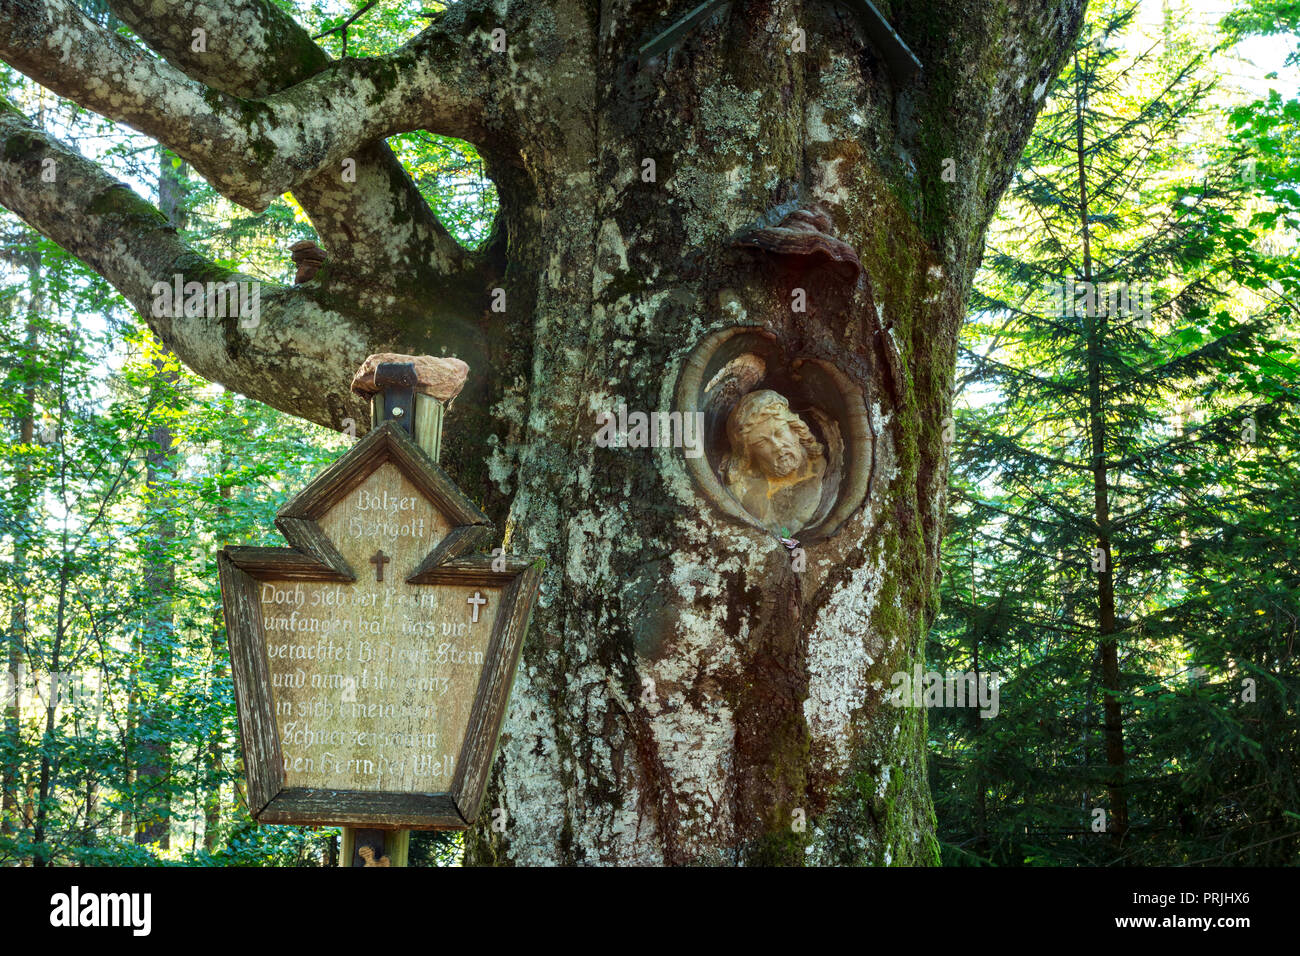 Seigneur de Mayence, le Christ en pierre figure, dans un bois de saule, près de Gütenbach, Forêt-Noire, Bade-Wurtemberg, Allemagne Banque D'Images